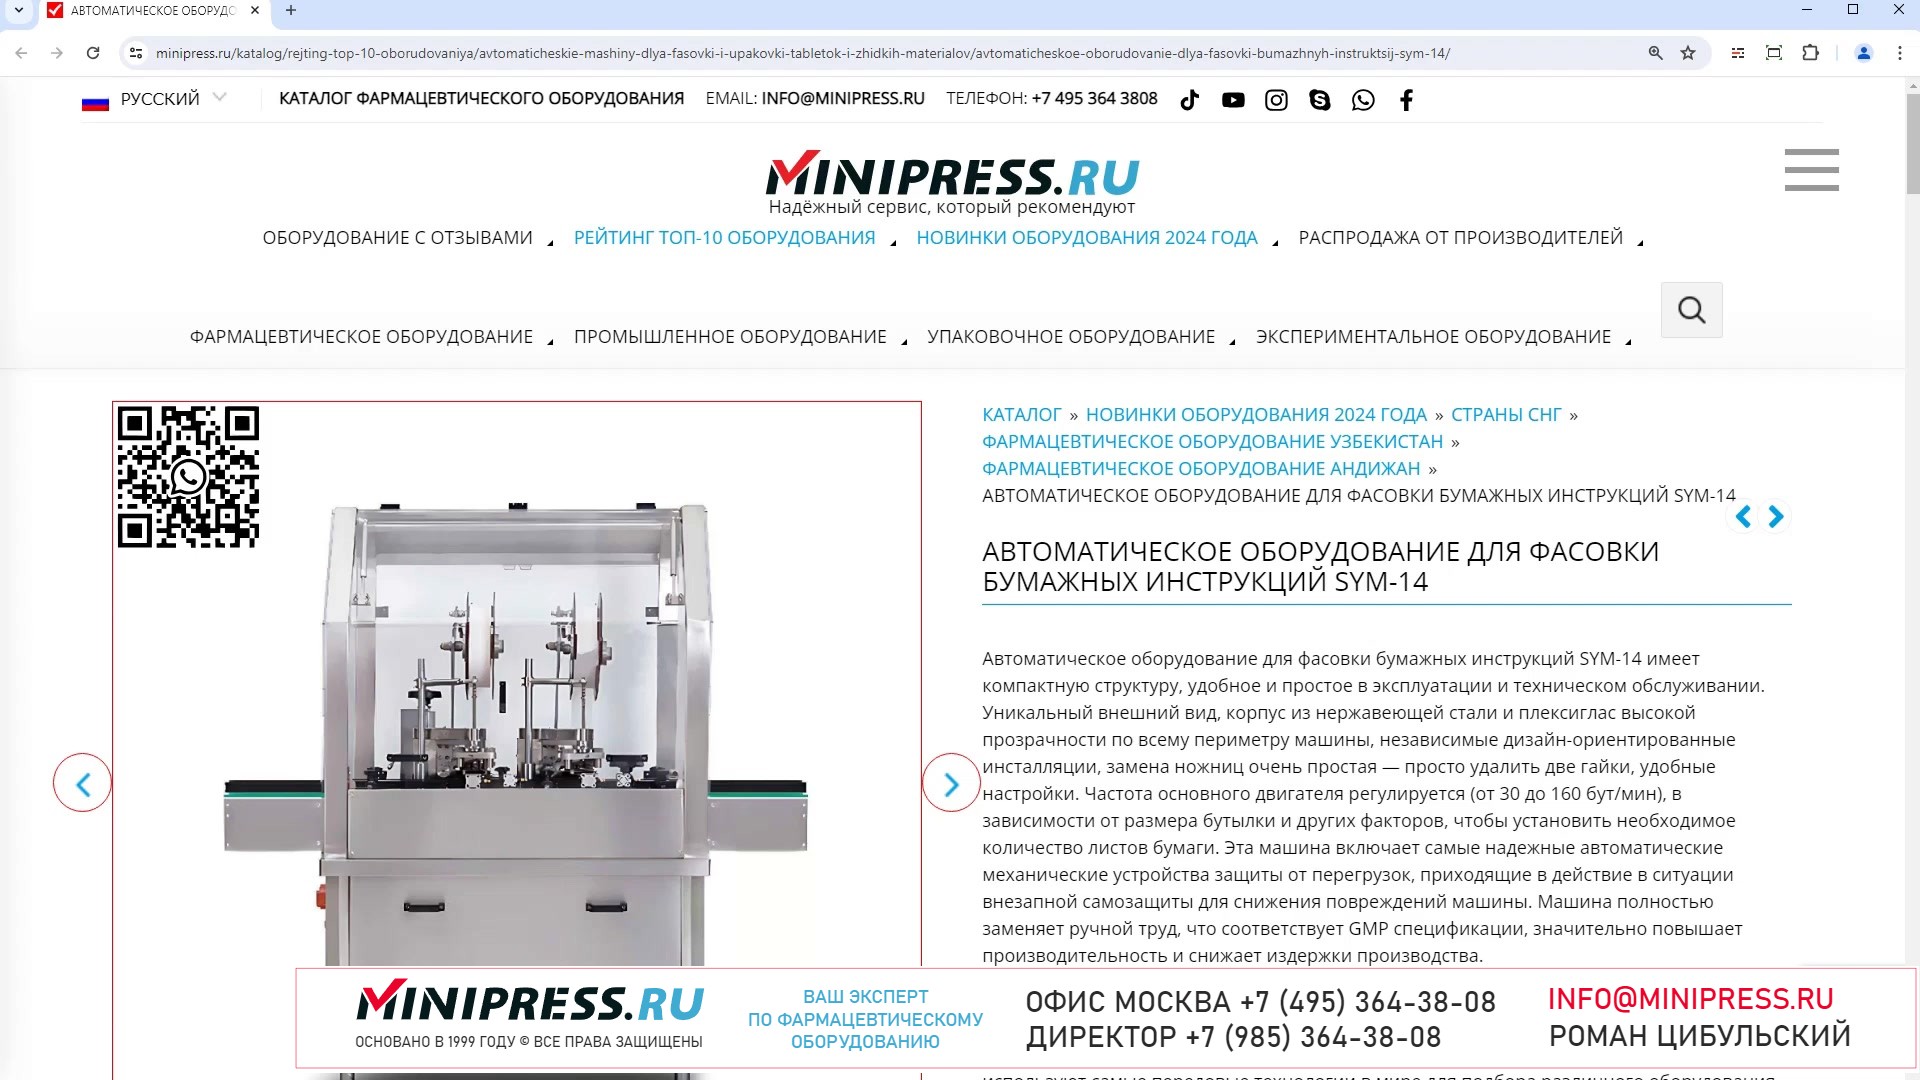 Minipress.ru Автоматическое оборудование для фасовки бумажных инструкций SYM-14